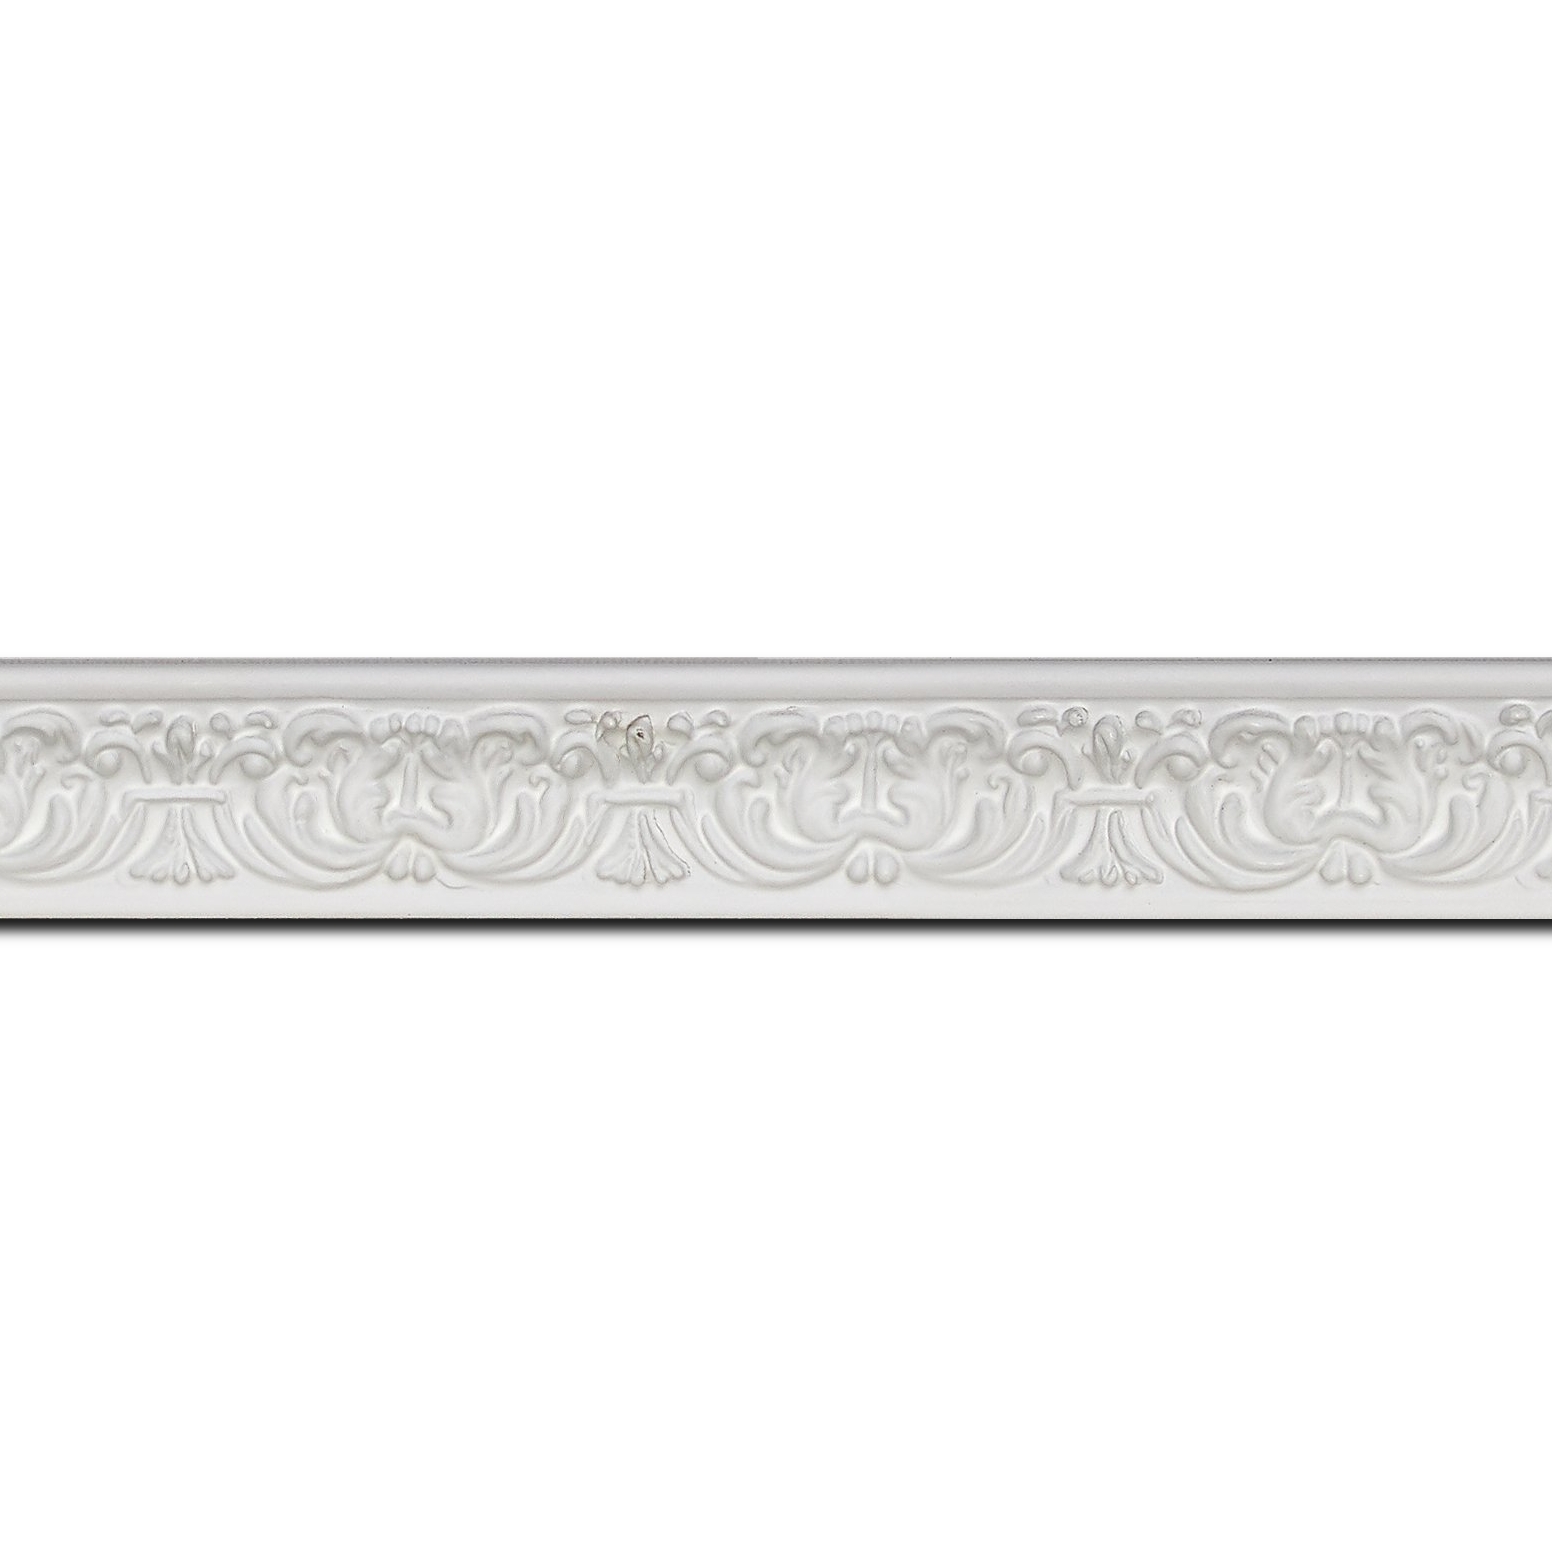 Pack par 12m, bois profil incurvé largeur 2.6cm couleur blanc en relief sur fond blanc(longueur baguette pouvant varier entre 2.40m et 3m selon arrivage des bois)